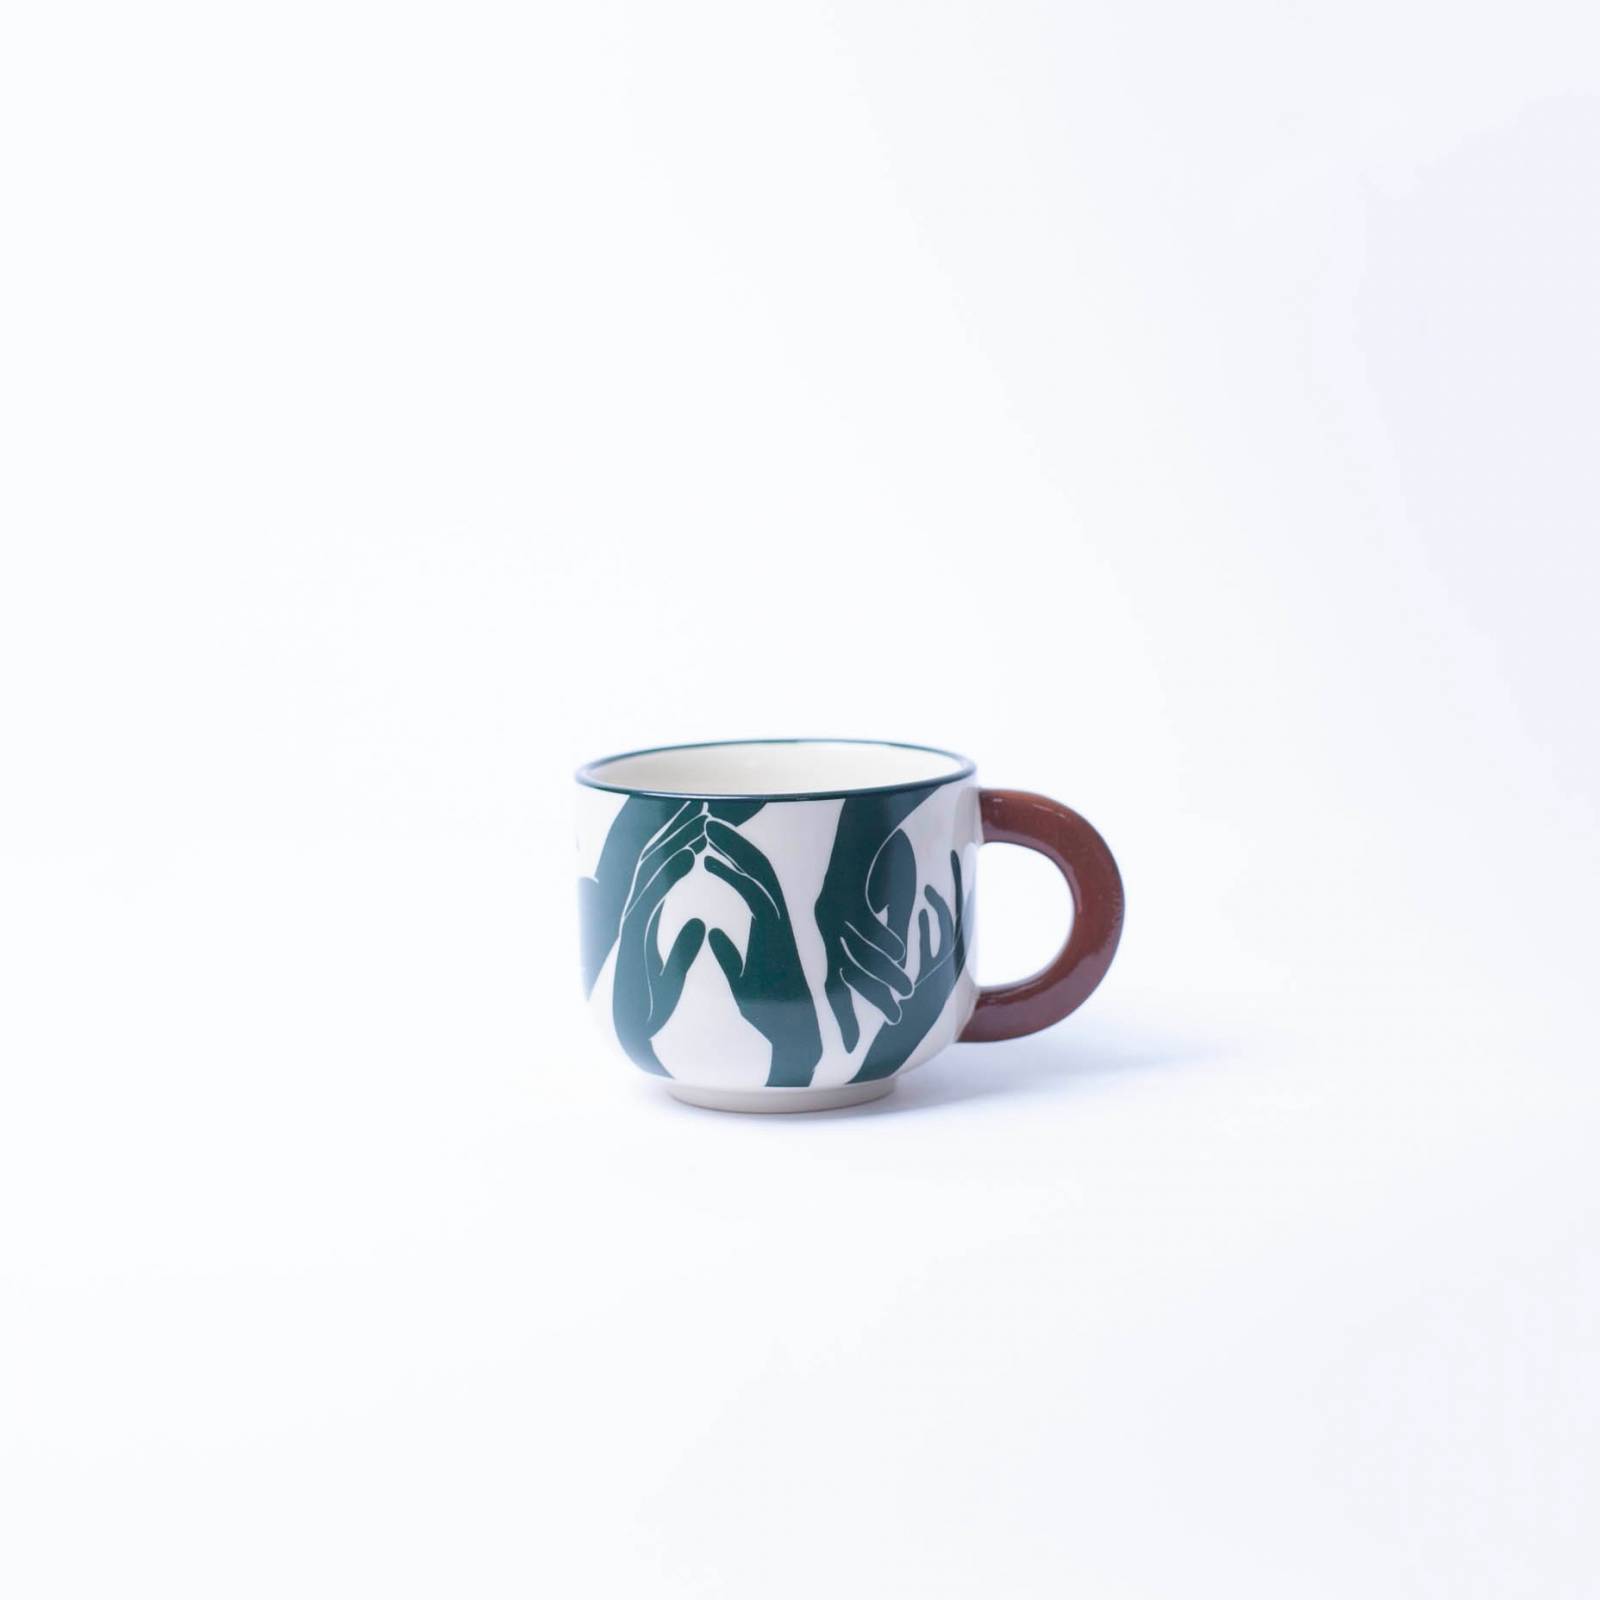 Small Mug With Green Hand Print & Brown Handle H:6.5cm